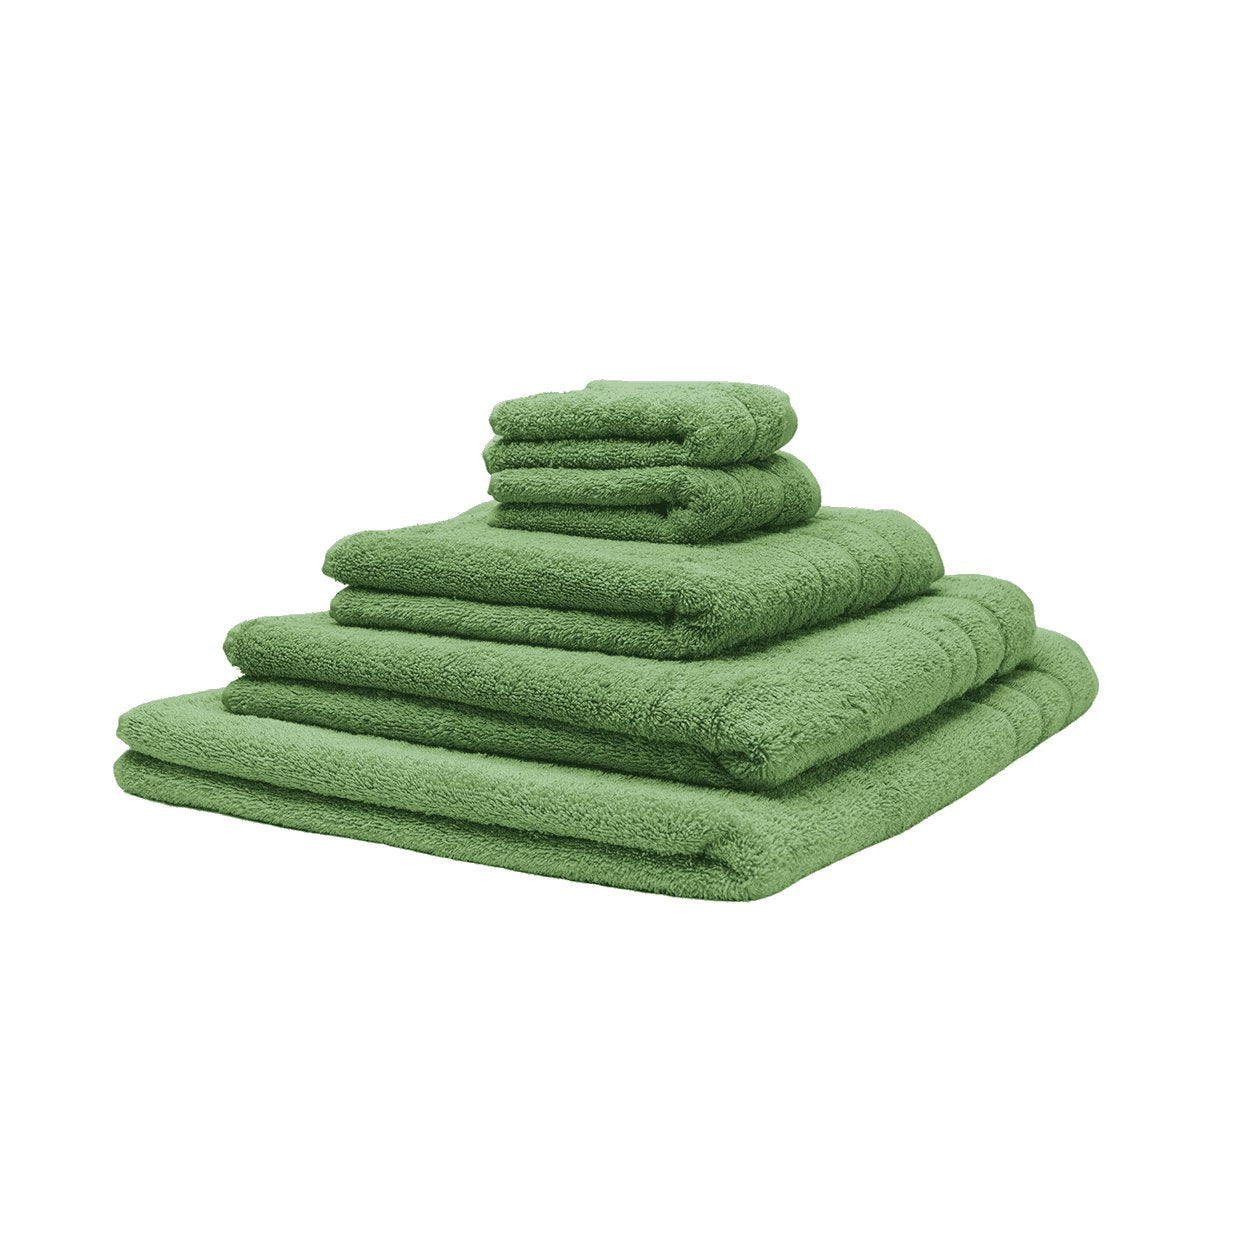 Fem økologiske håndklæder stablet oven på hinanden. Farven er grøn. 